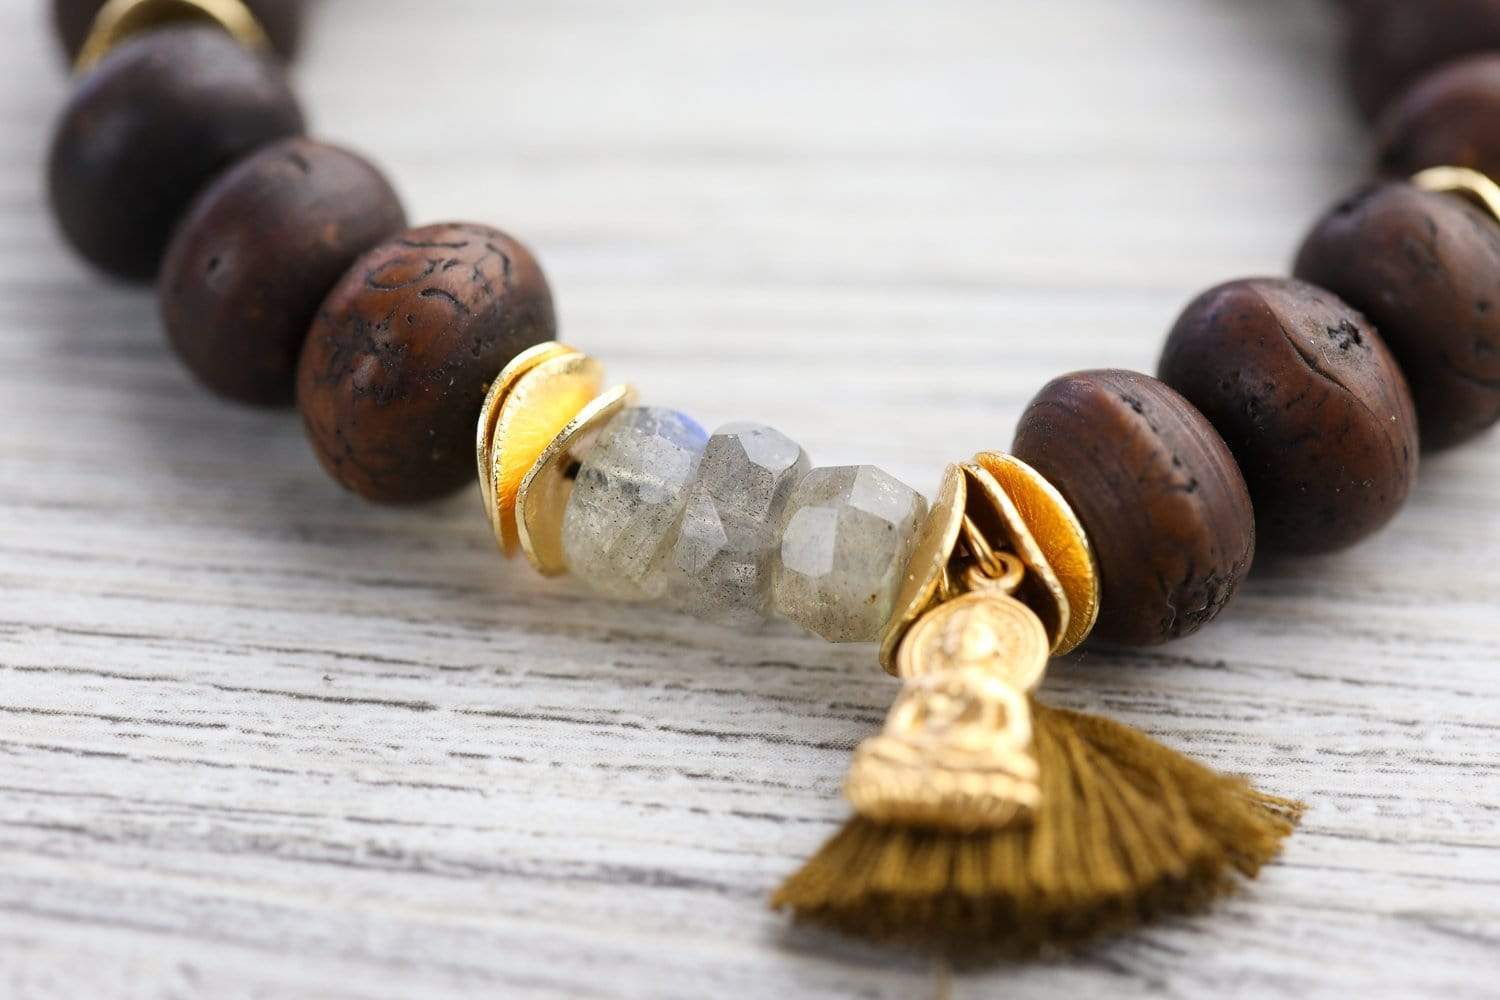 Mala Beads Energizing Bodhi Seed Mala & Bracelet Set